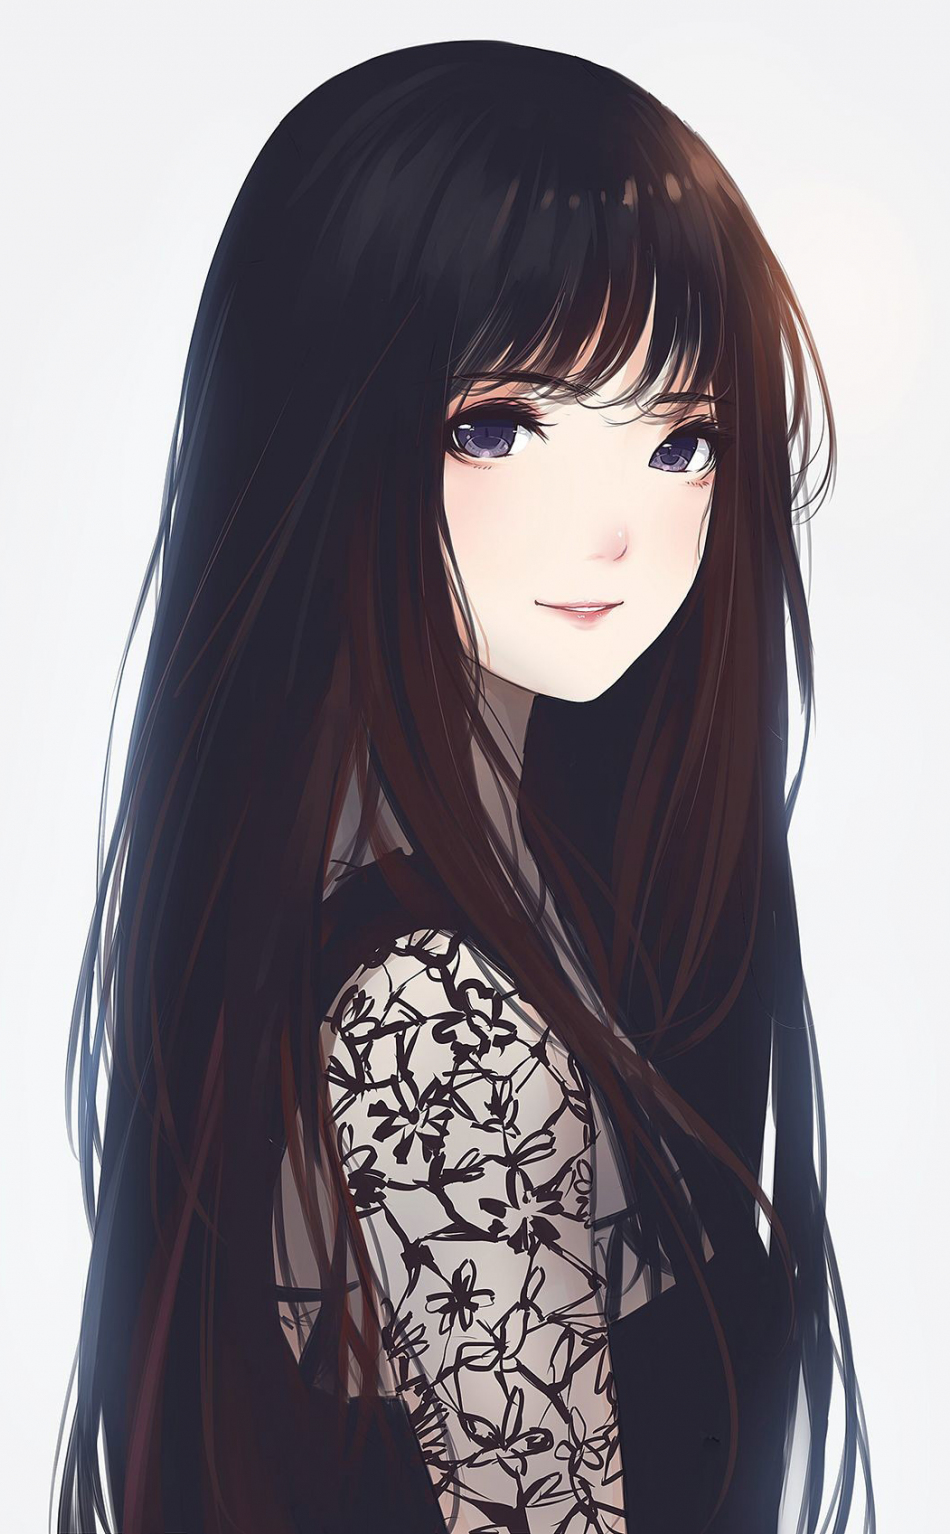 Anime Girl Wallpaper Hd Free Download gambar ke 17